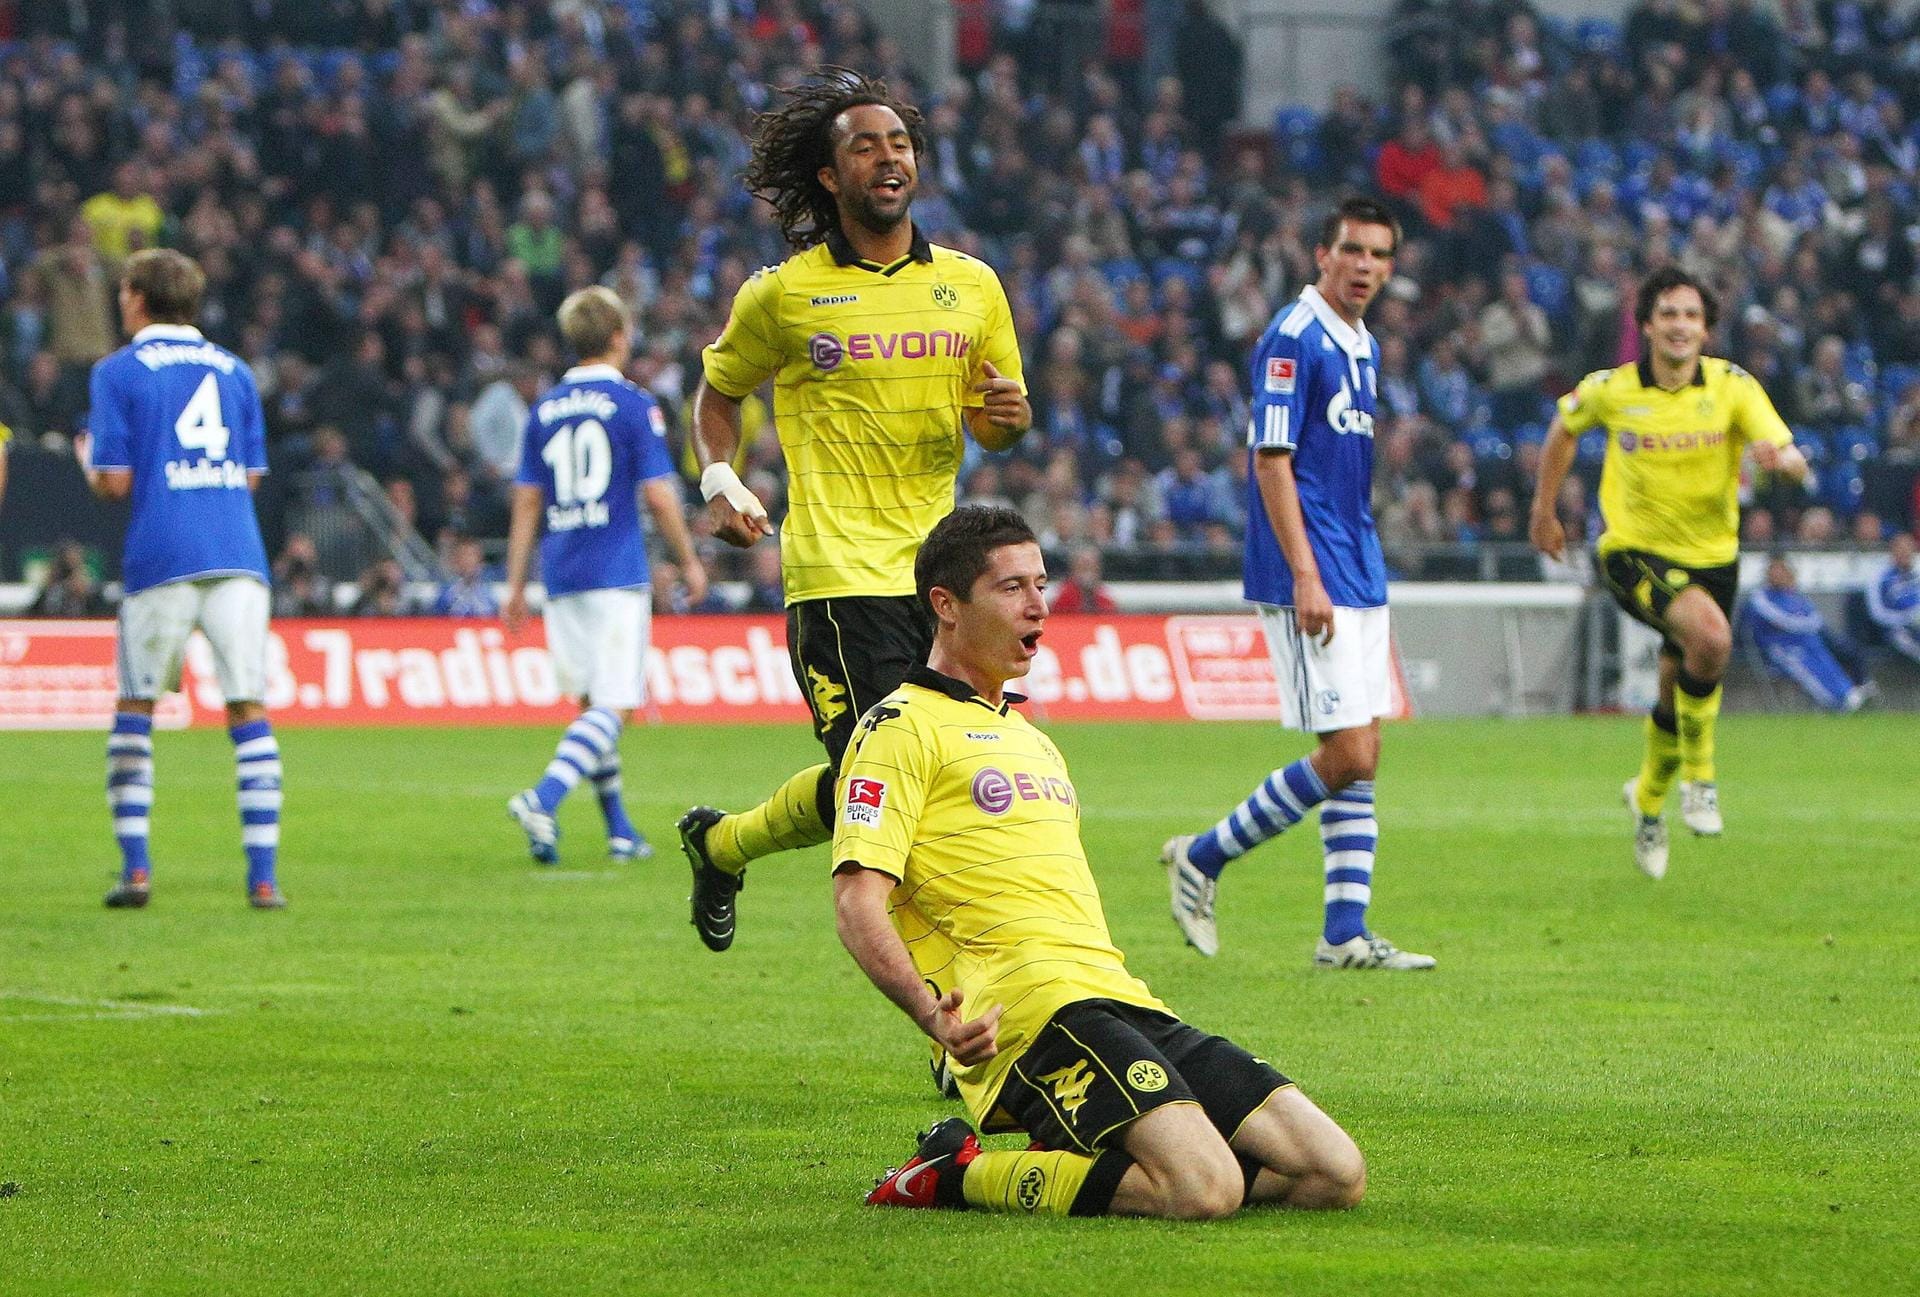 Robert Lewandowski (Borussia Dortmund/ 1 Tor): Der dominierende Torjäger der 2010er-Jahre erlebte sein Bundesligadebüt bei Borussia Dortmund. Nachdem er zu Saisonbeginn 2010/11 zweimal ausgewechselt wurde und einmal ganz draußen blieb, gelang dem Polen am 4. Spieltag im Revierderby gegen Schalke als Einwechselspieler sein erster Treffer. Der BVB gewann 3:1.